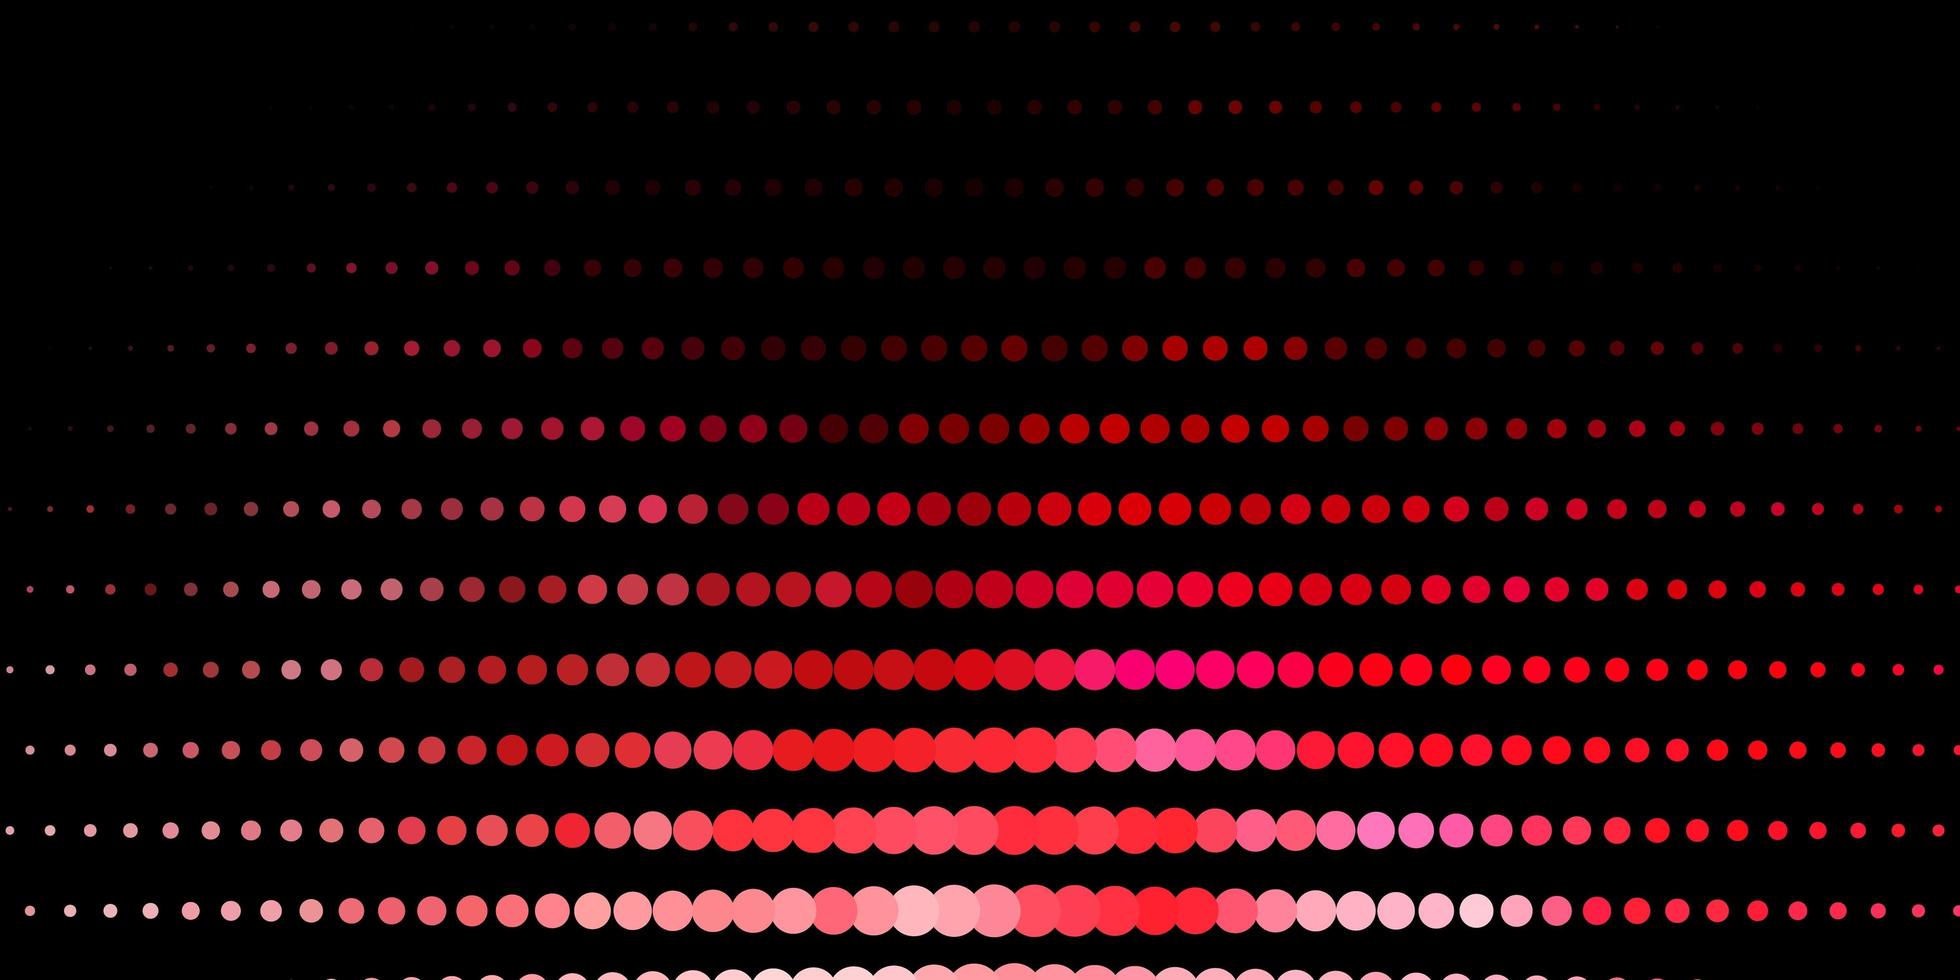 hellrosa, rote Vektorvorlage mit Kreisen. abstrakte bunte Scheiben auf einfachem Hintergrund mit Farbverlauf. Muster für Websites, Landingpages. vektor